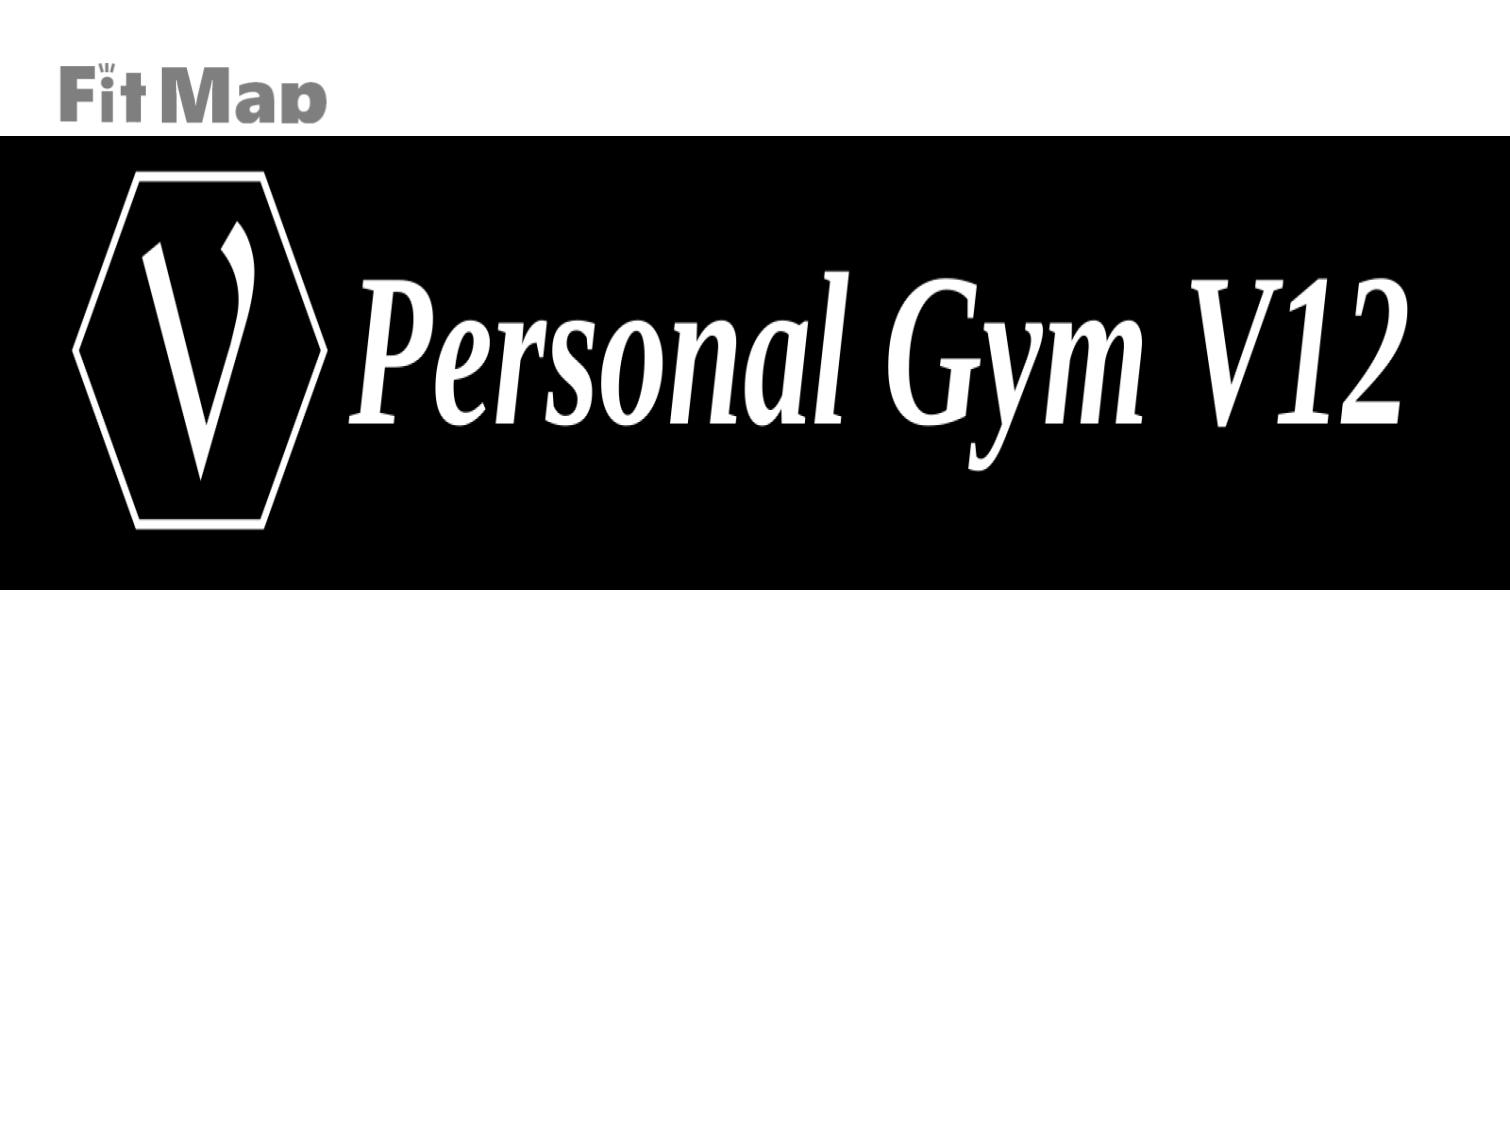 Personal Gym V12 宇都宮店の施設画像